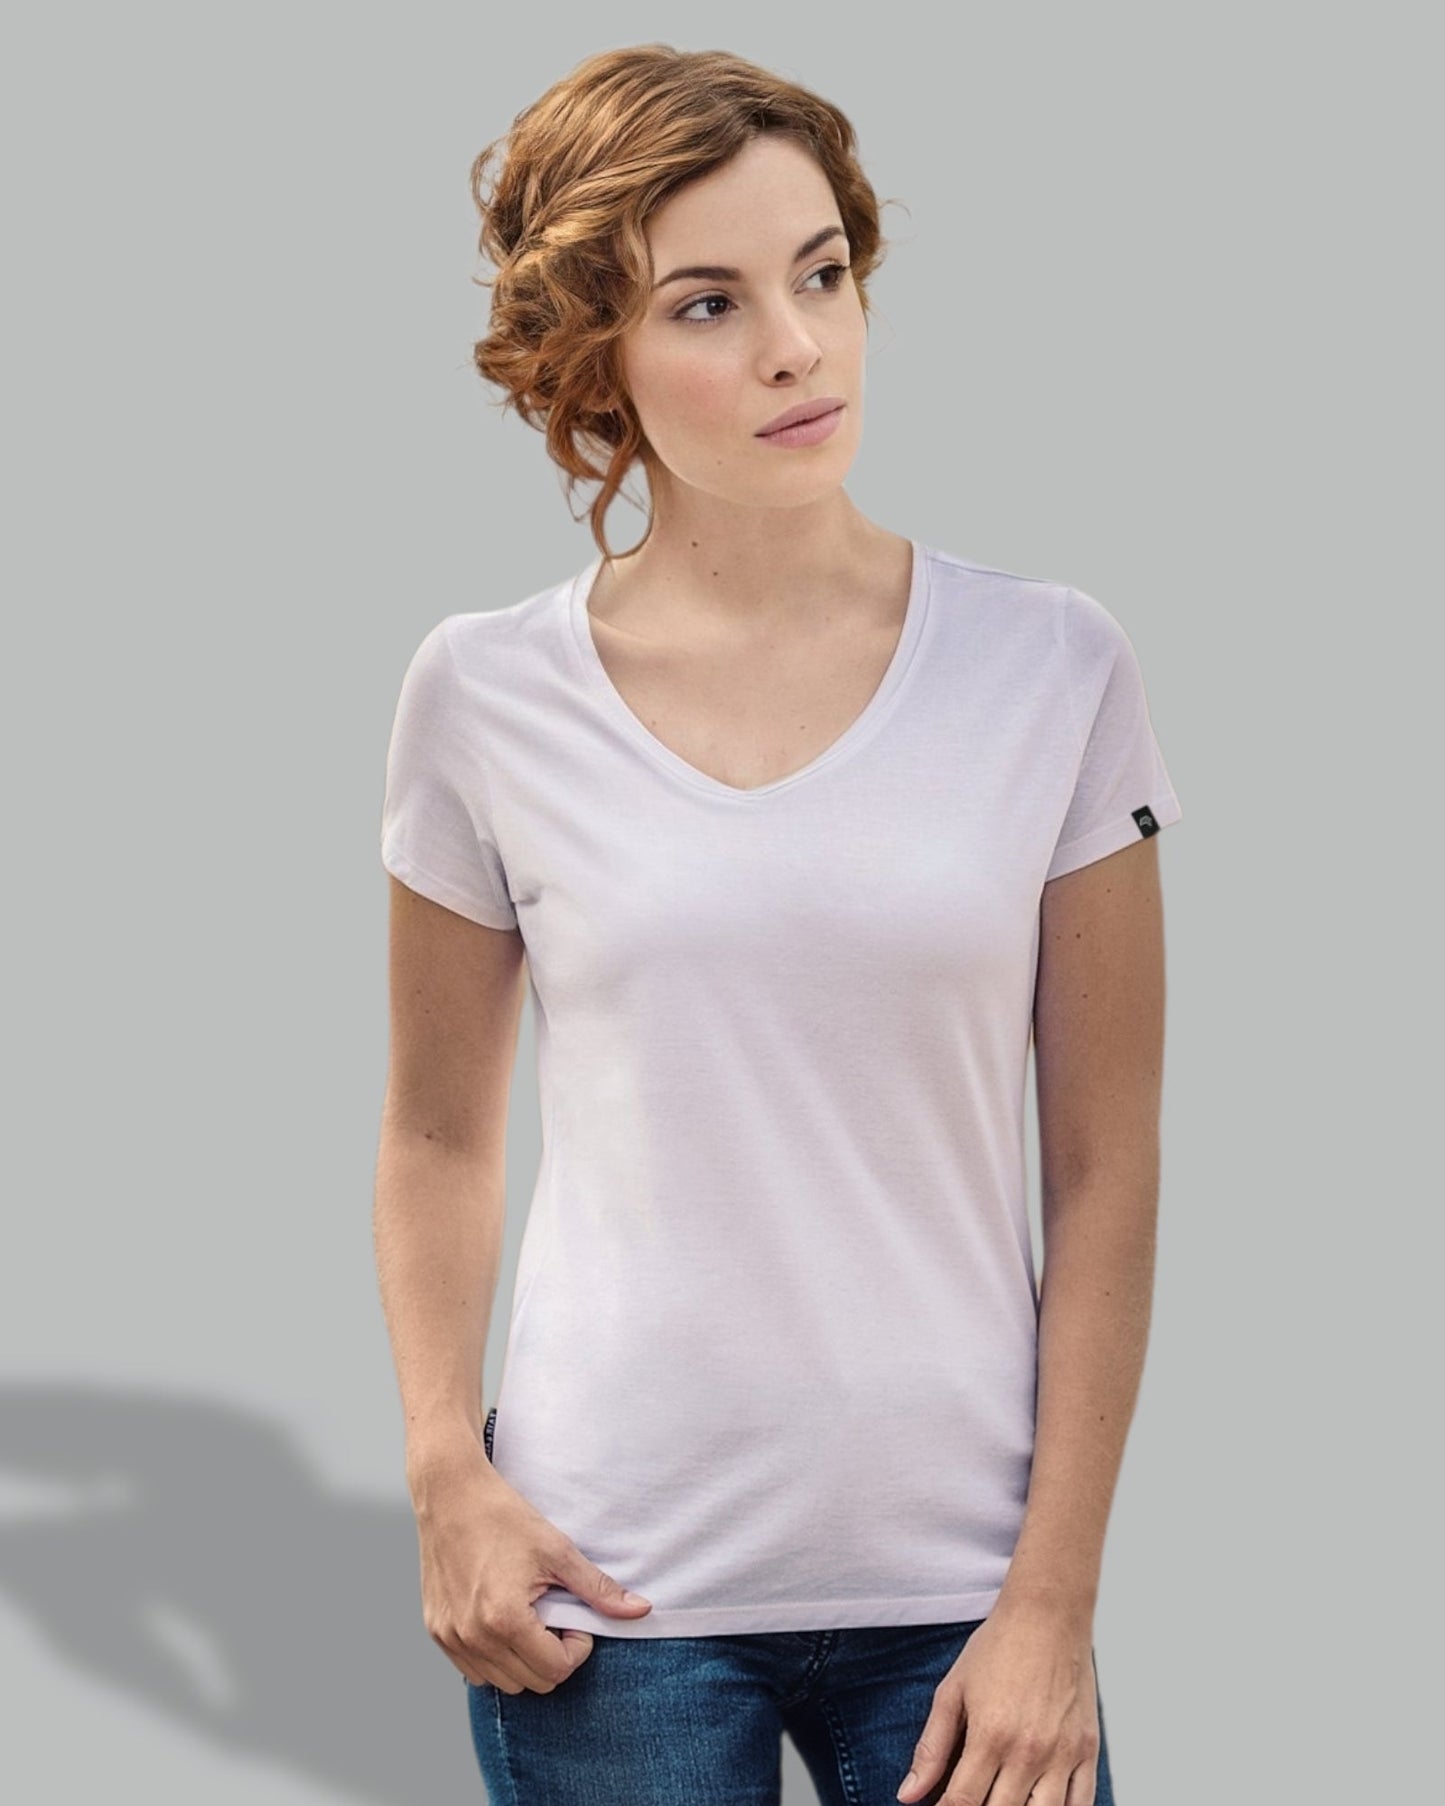 ― % ― RMH 0202/10A ― Damen Luxury Bio-Baumwolle V-Neck T-Shirt - Burgund Rot [4XL]